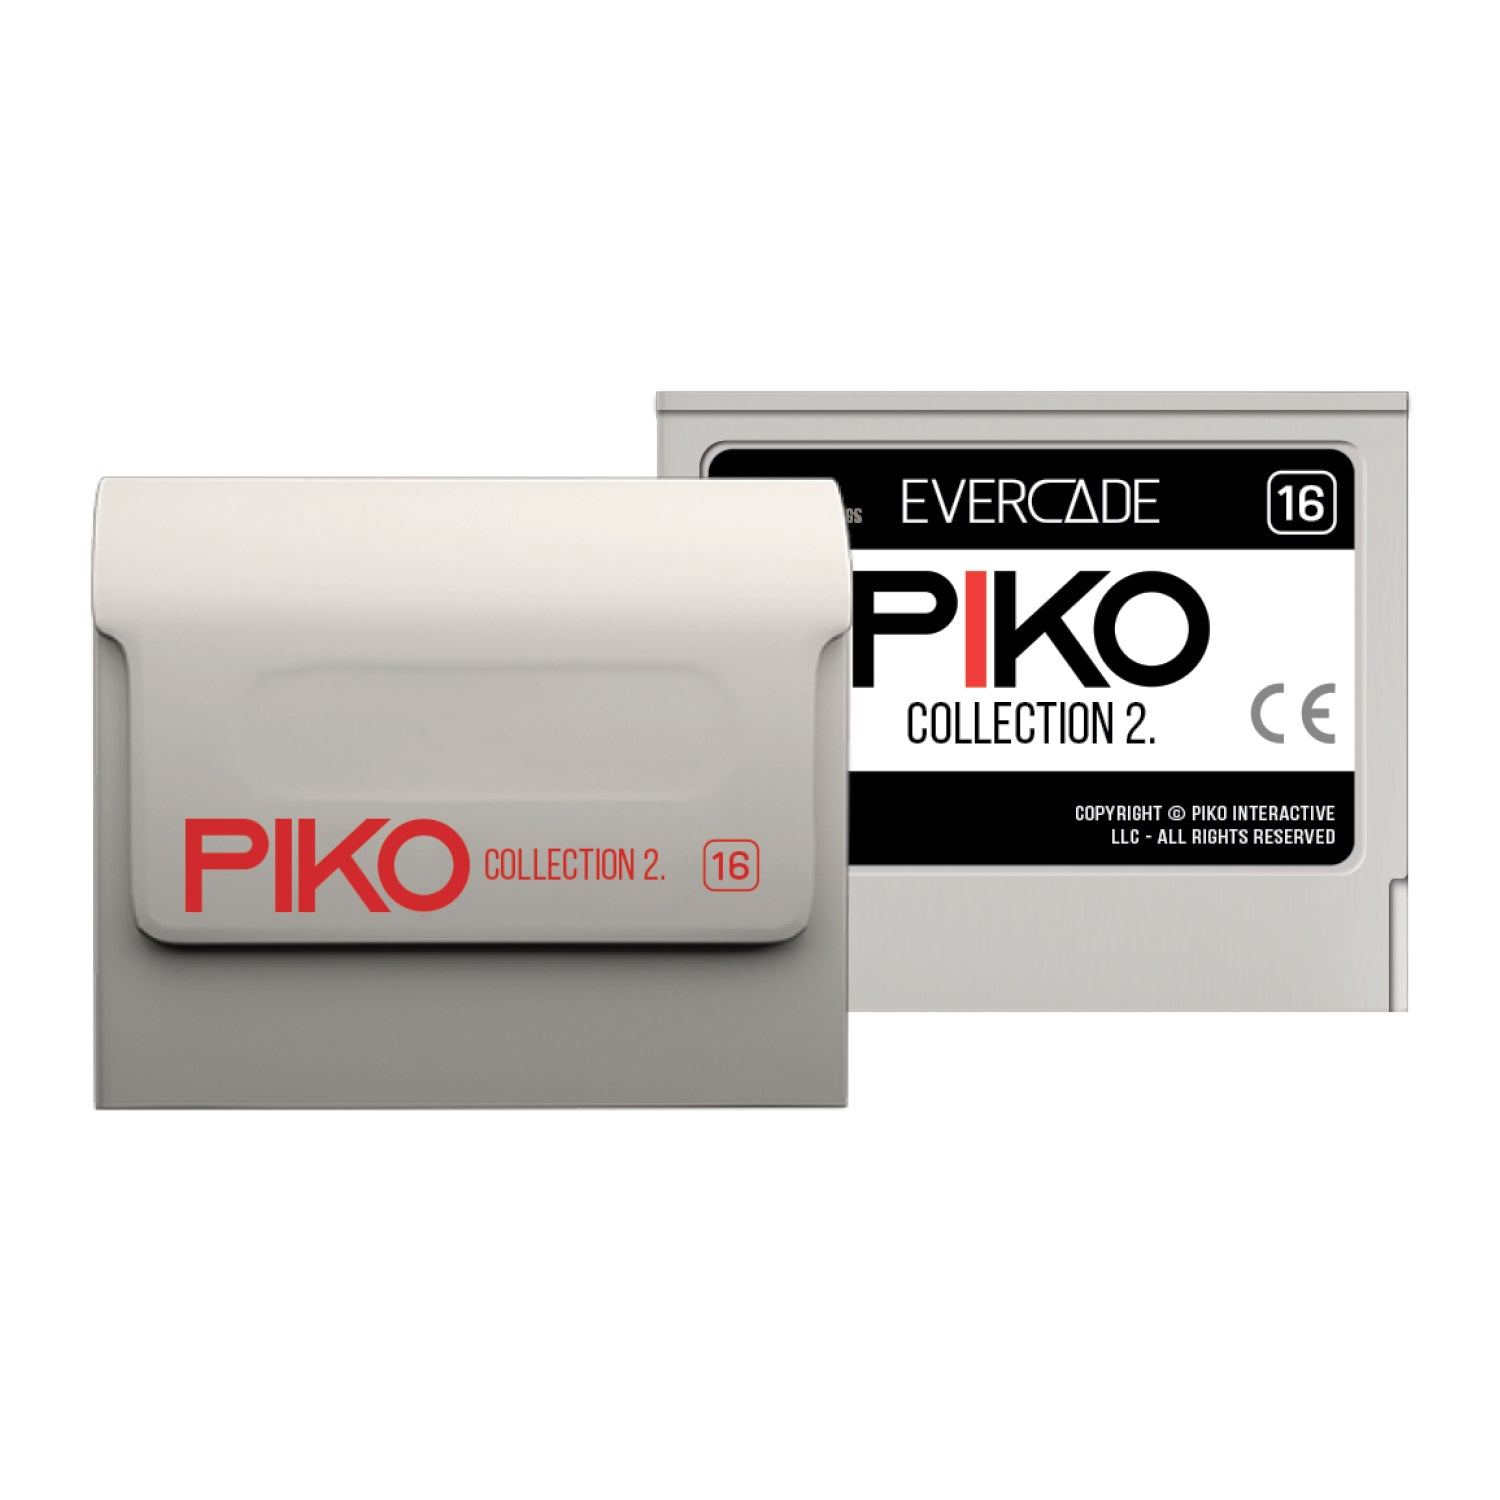 #16 Piko Interactive 2 - Evercade Cartridge